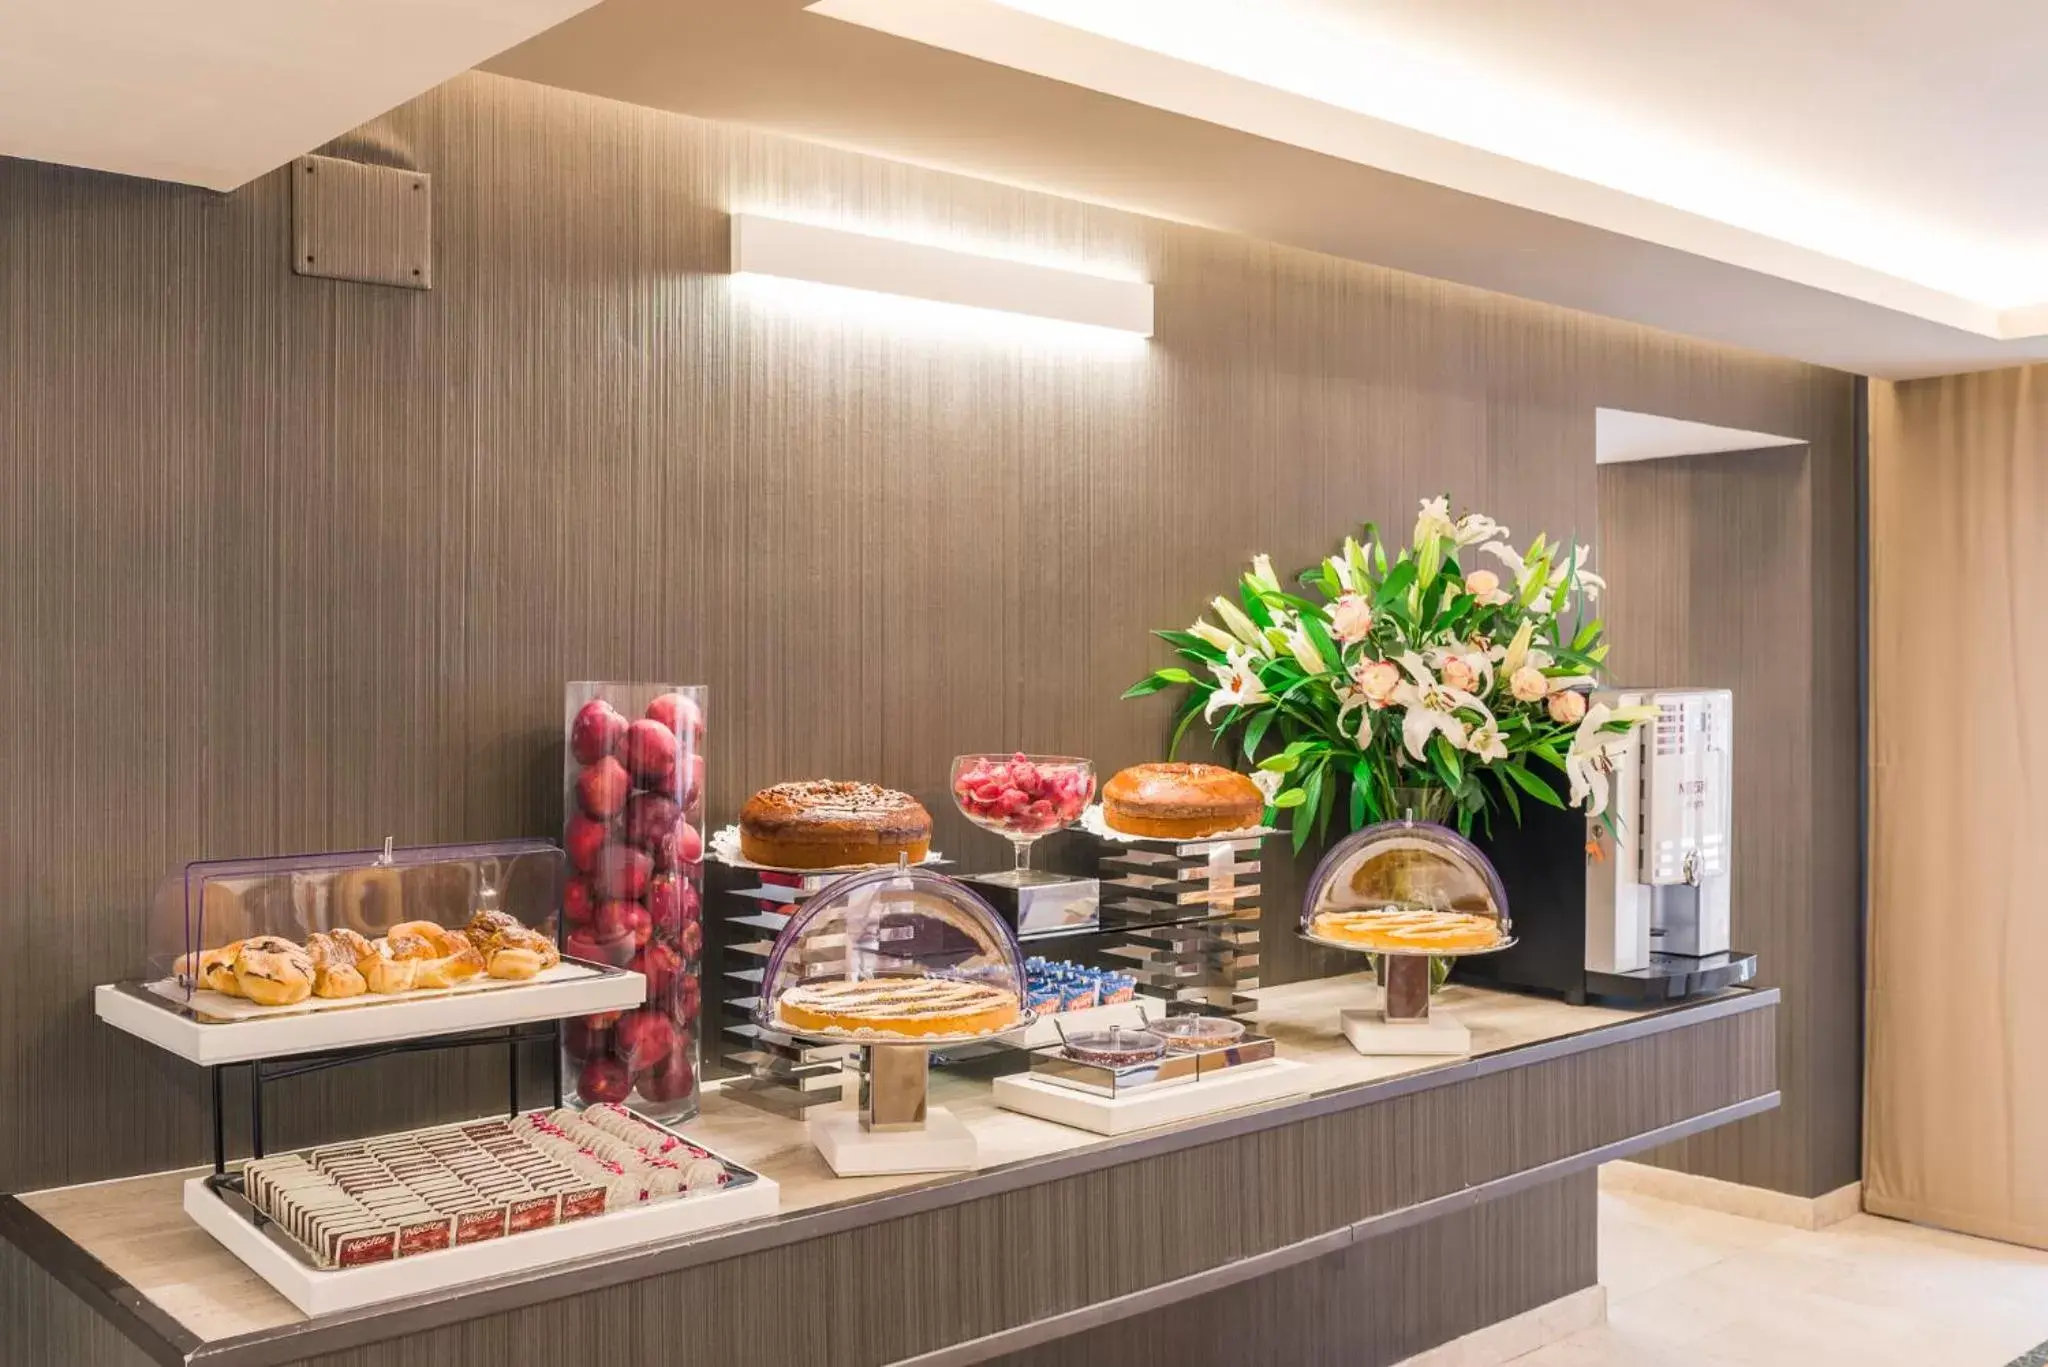 Buffet breakfast, Food in Raeli Hotel Siracusa